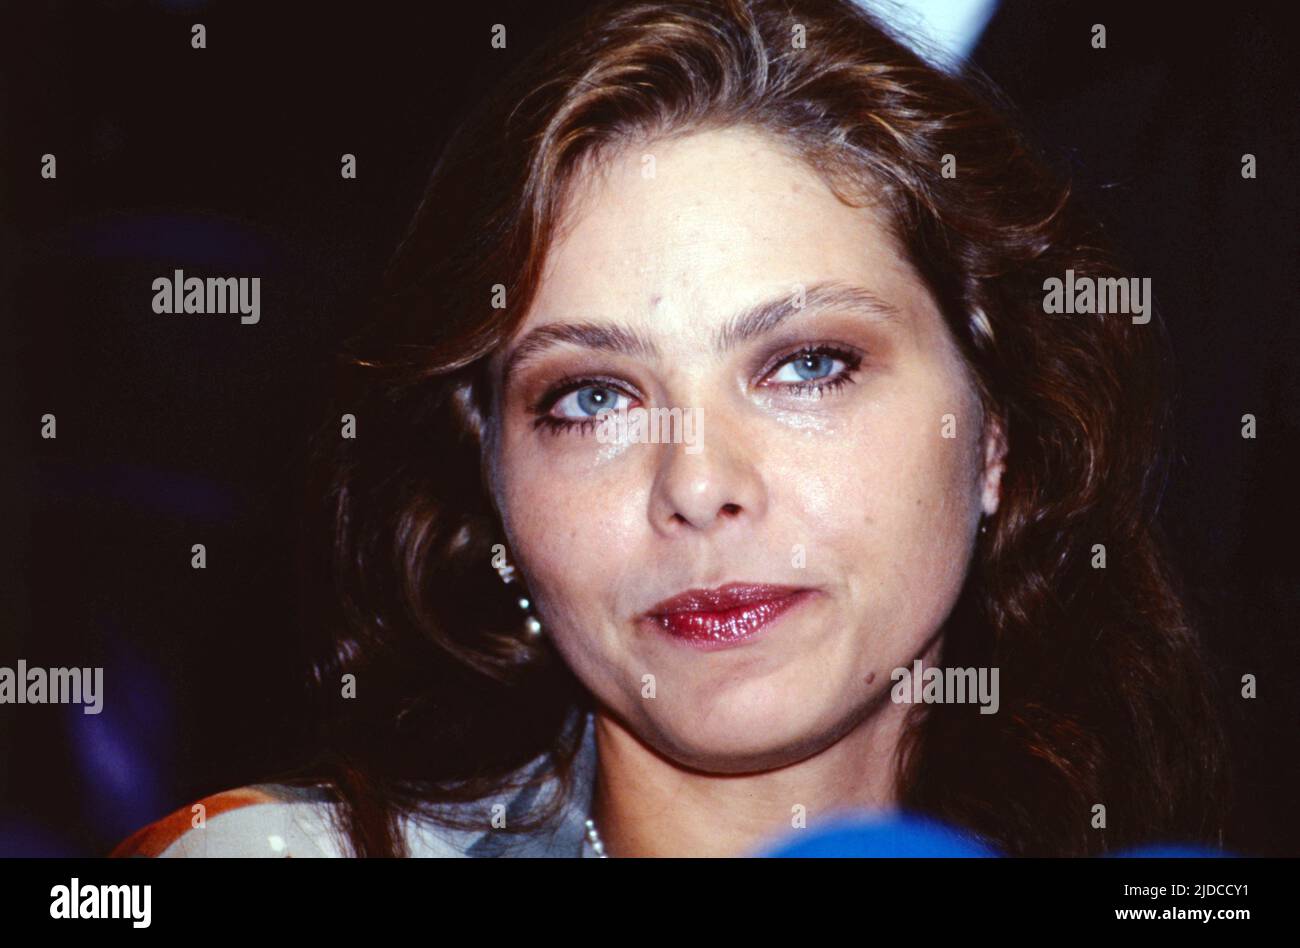 Ornella Muti, italienische Filmschauspielerin, Portrait, Deutschland, 1999. Ornella Muti, italienische Filmschauspielerin, Porträt, Deutschland, 1999. Stockfoto